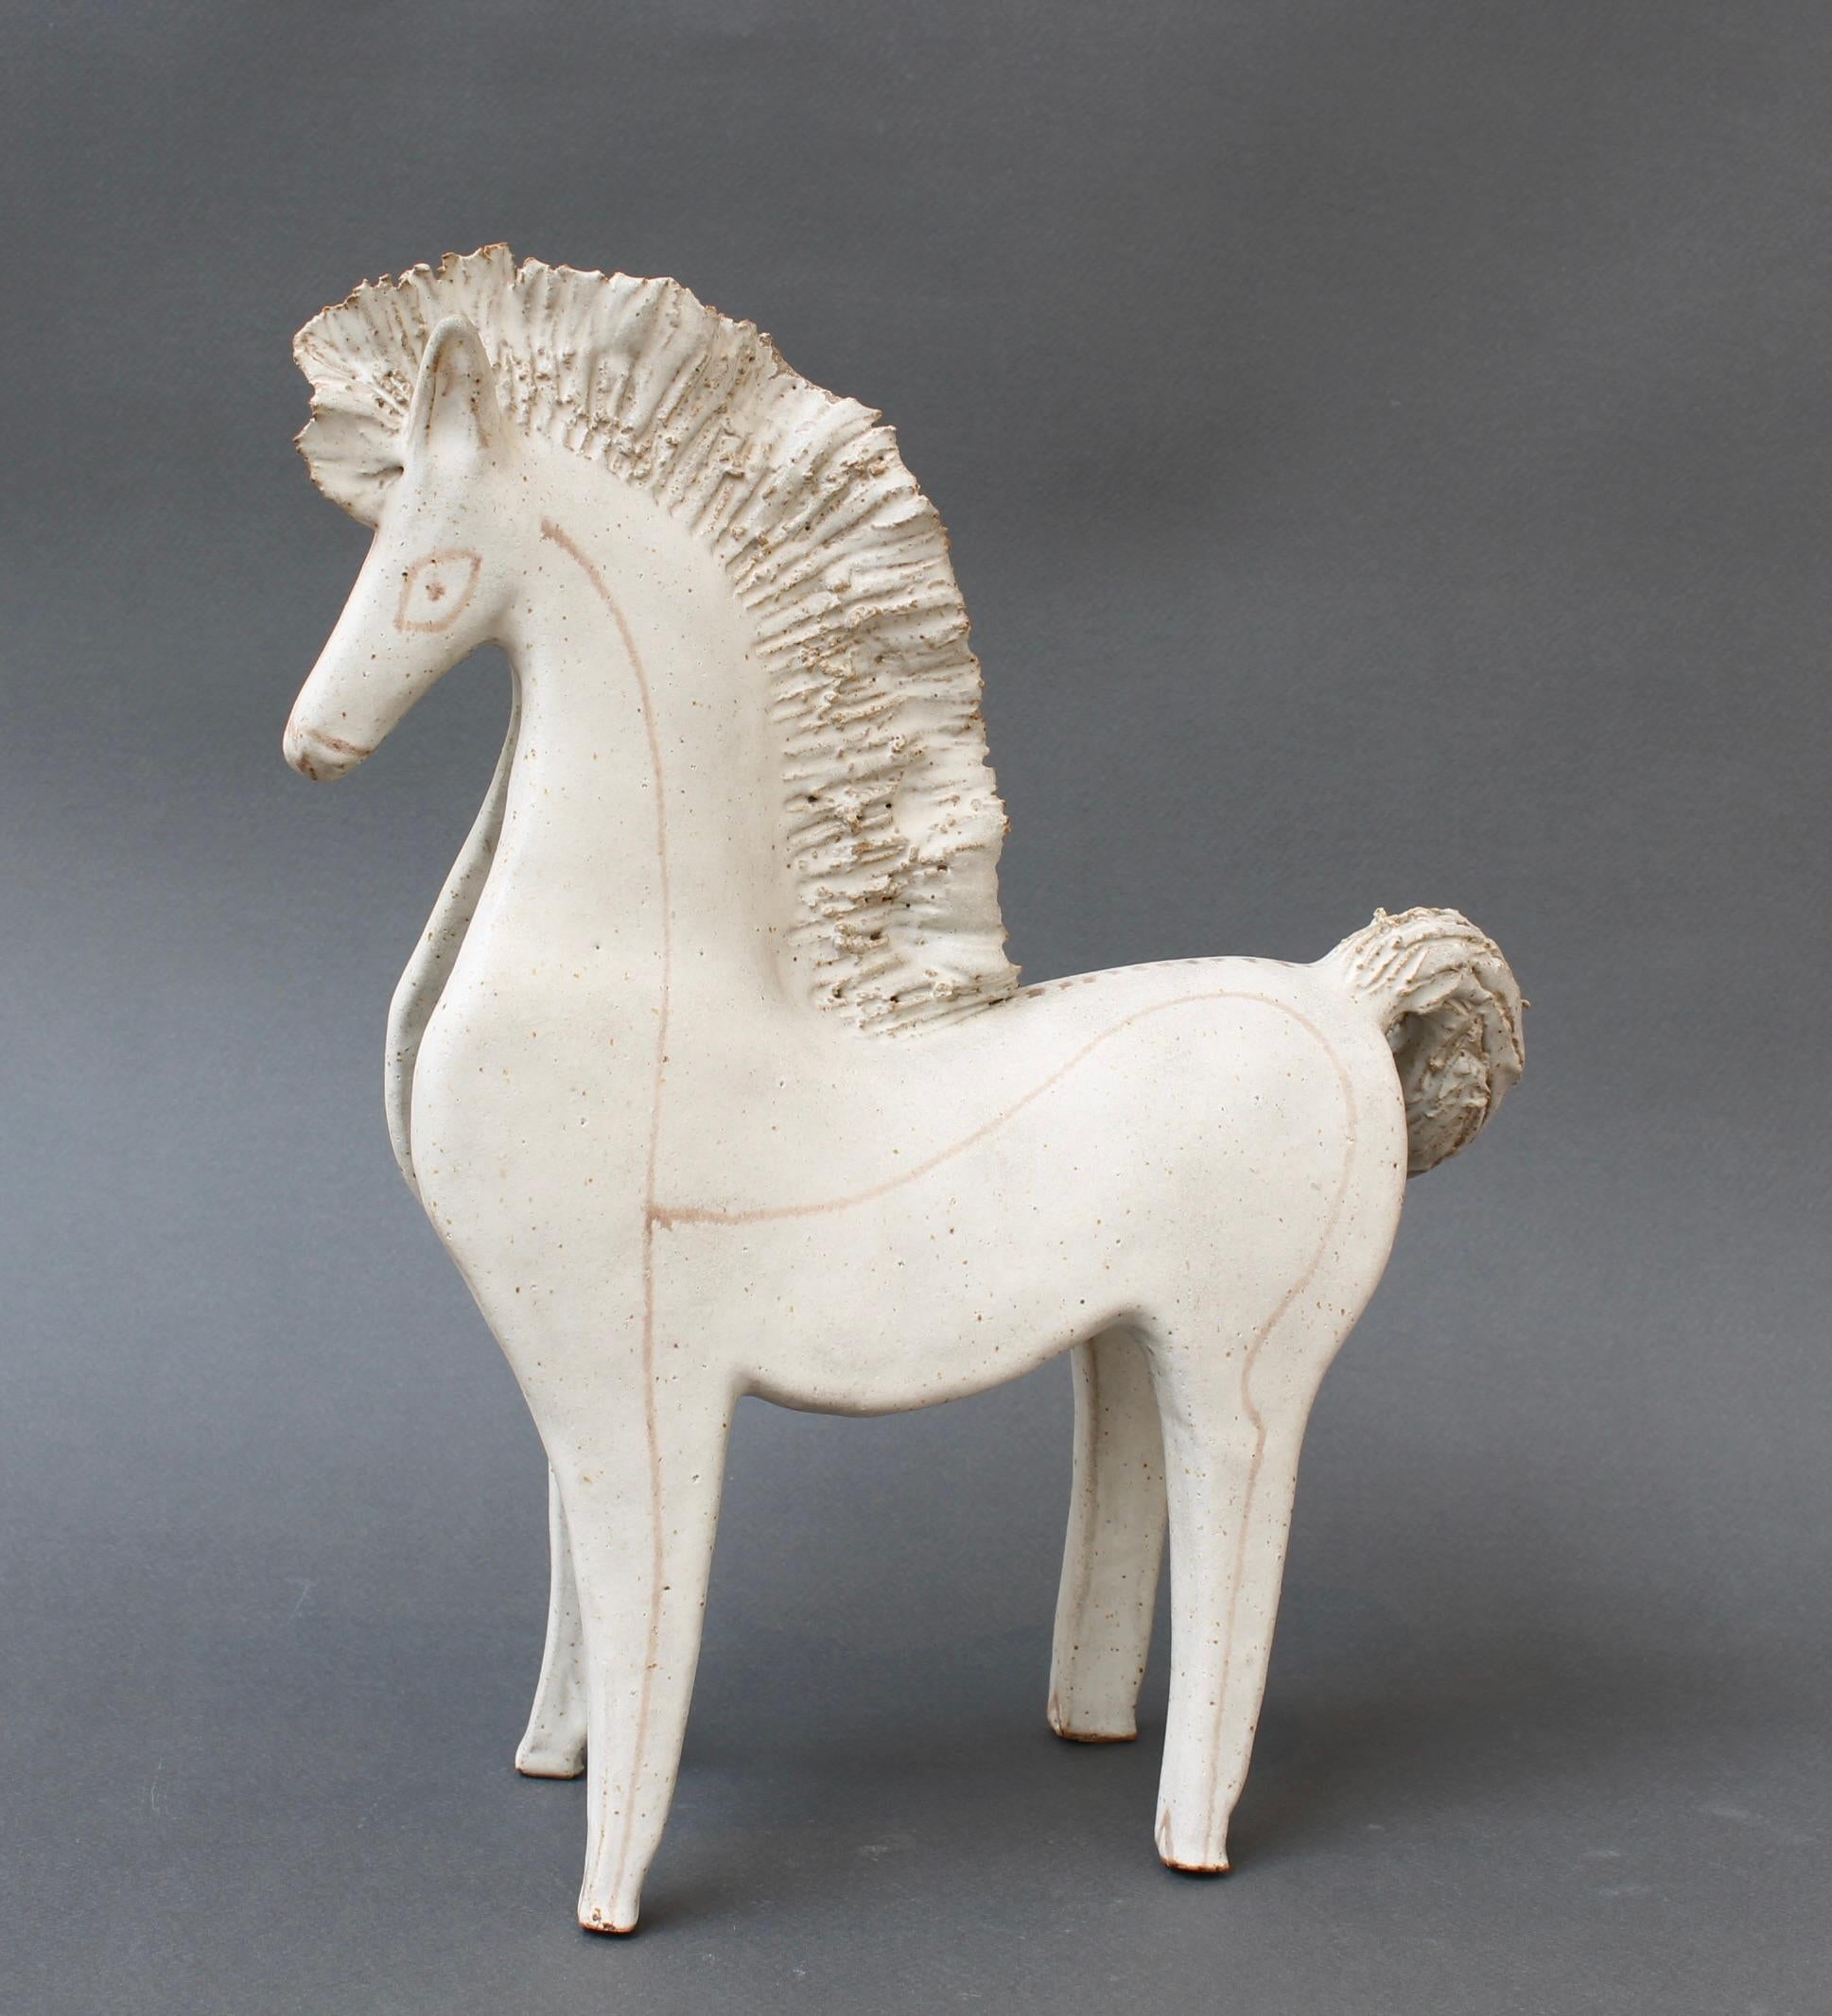 Cheval en céramique vintage de Bruno Gambone, (vers les années 1970). Un charmant cheval de parade en céramique de grande taille, à la crinière et à la queue soignées, recouvert de la glaçure blanche crayeuse caractéristique de Gambone. Des lignes